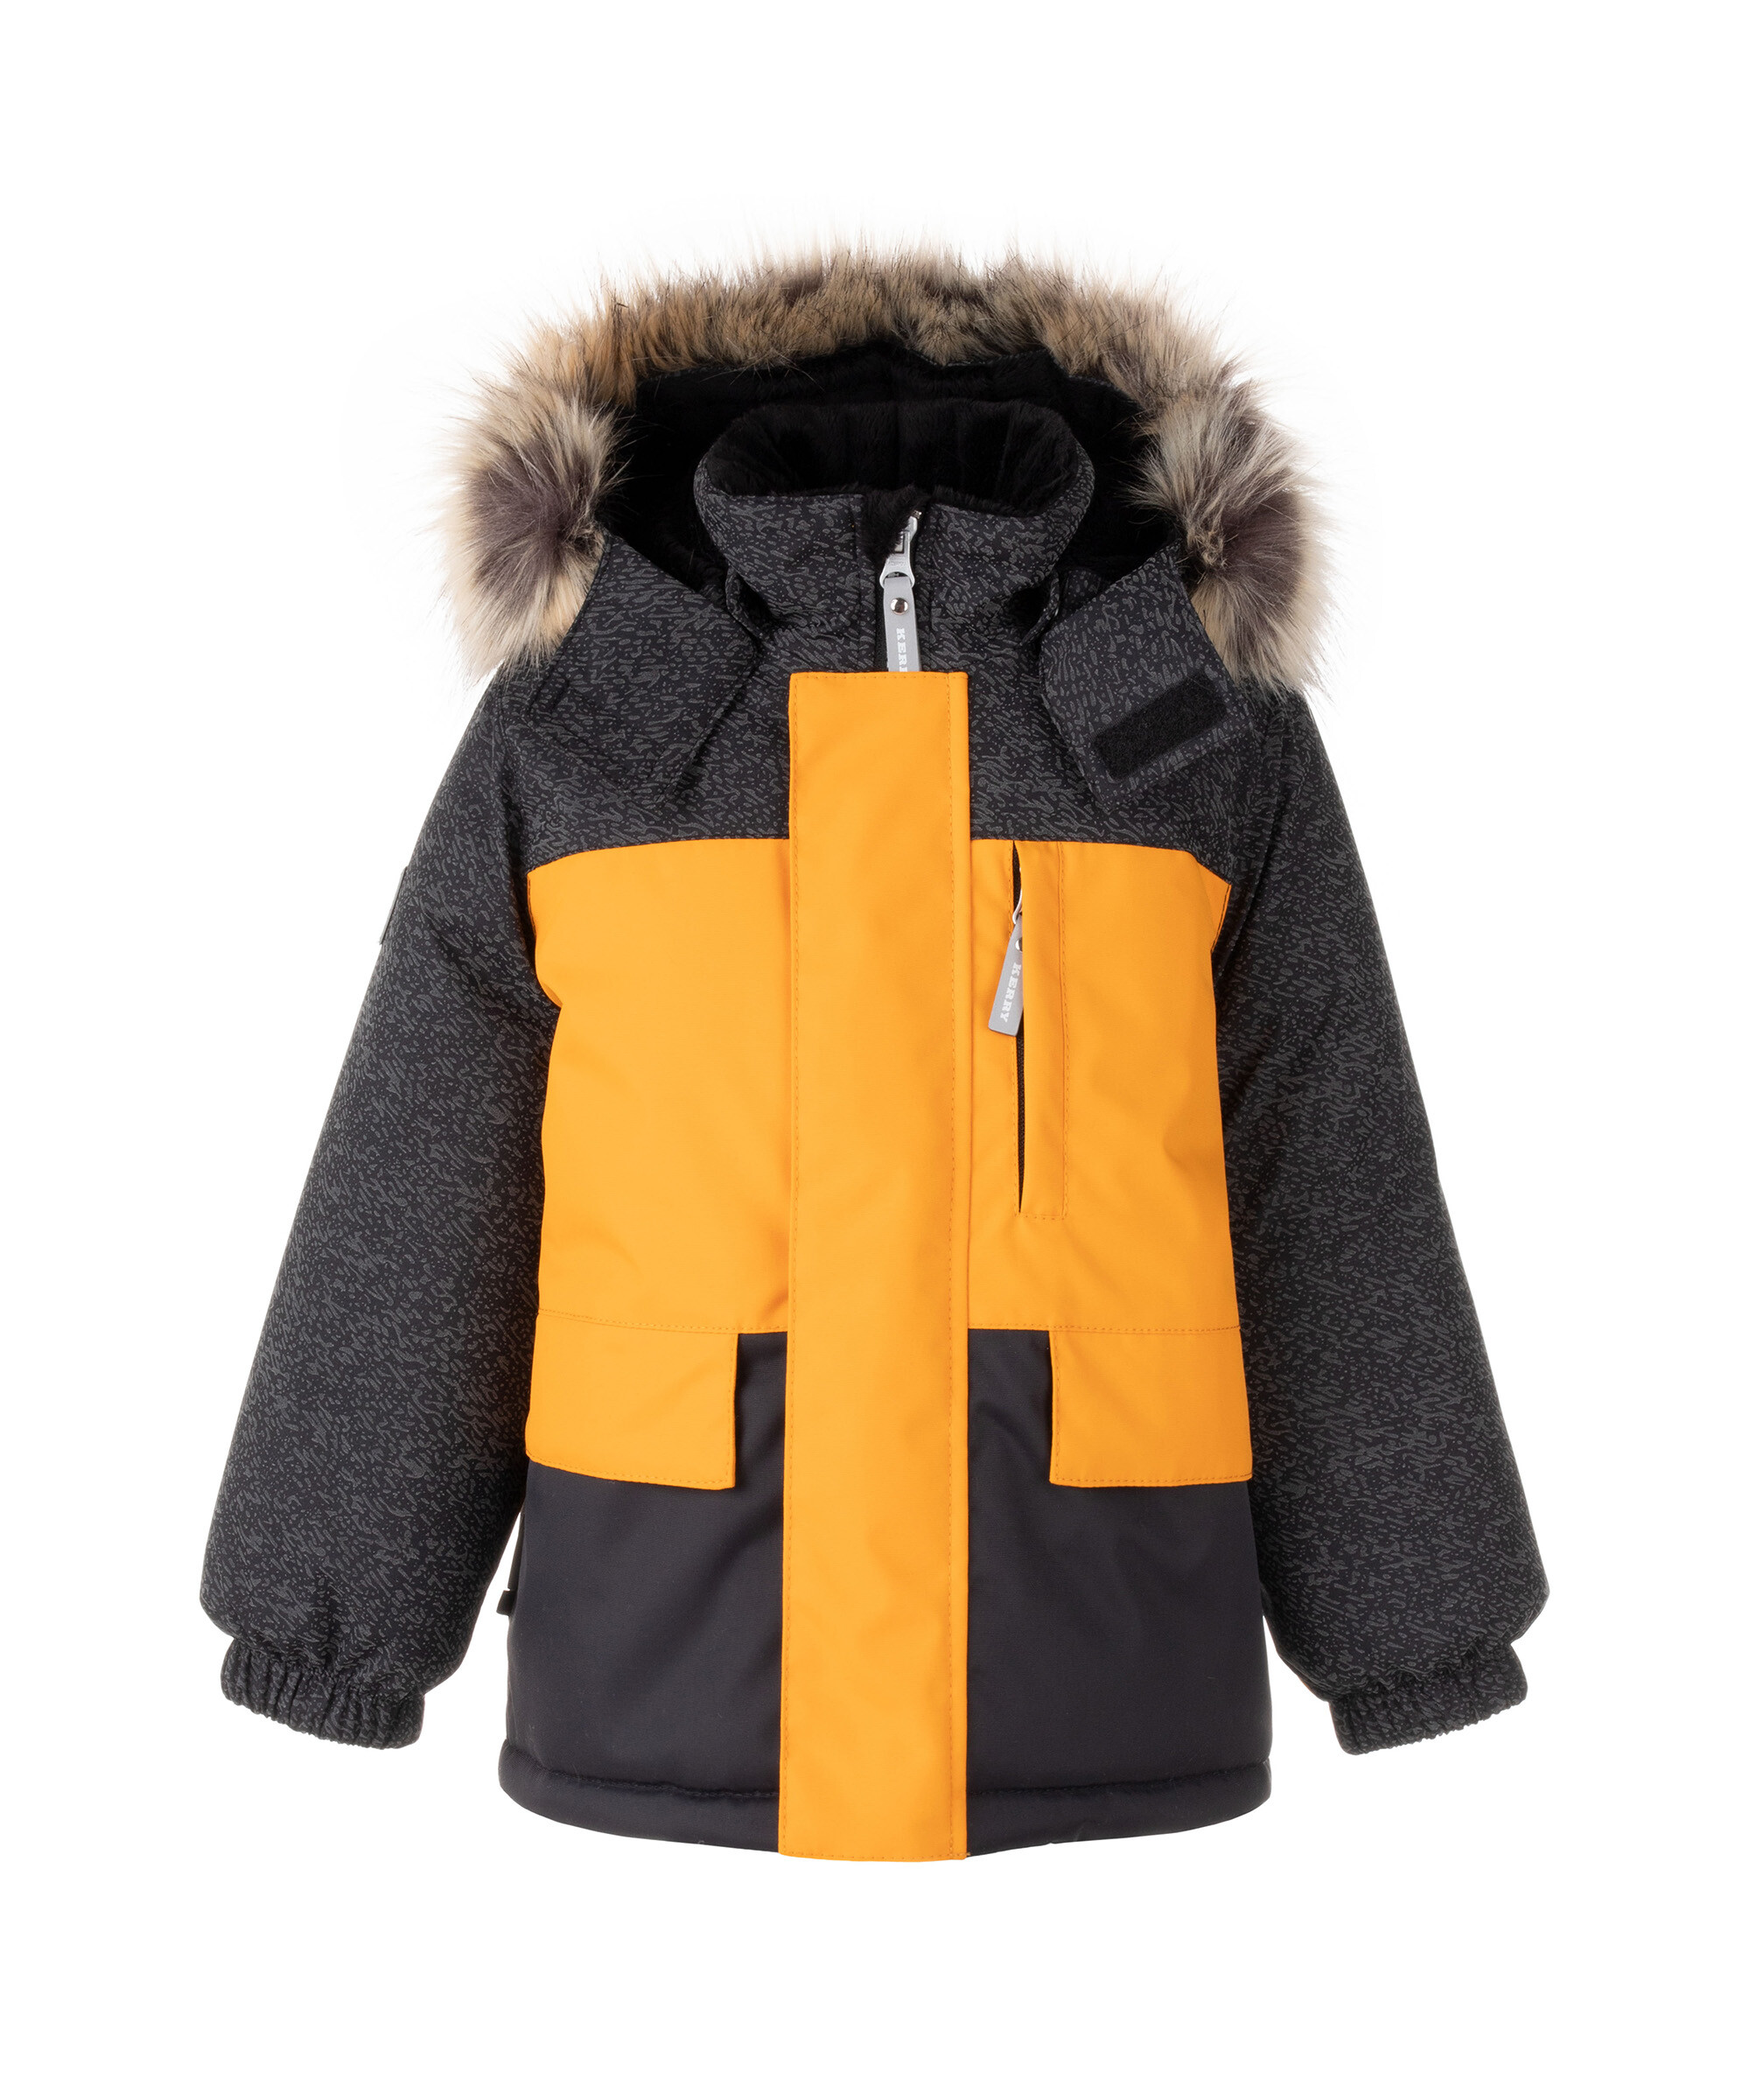 Куртка детская KERRY K22842 MC цв. черный; желтый р. 104